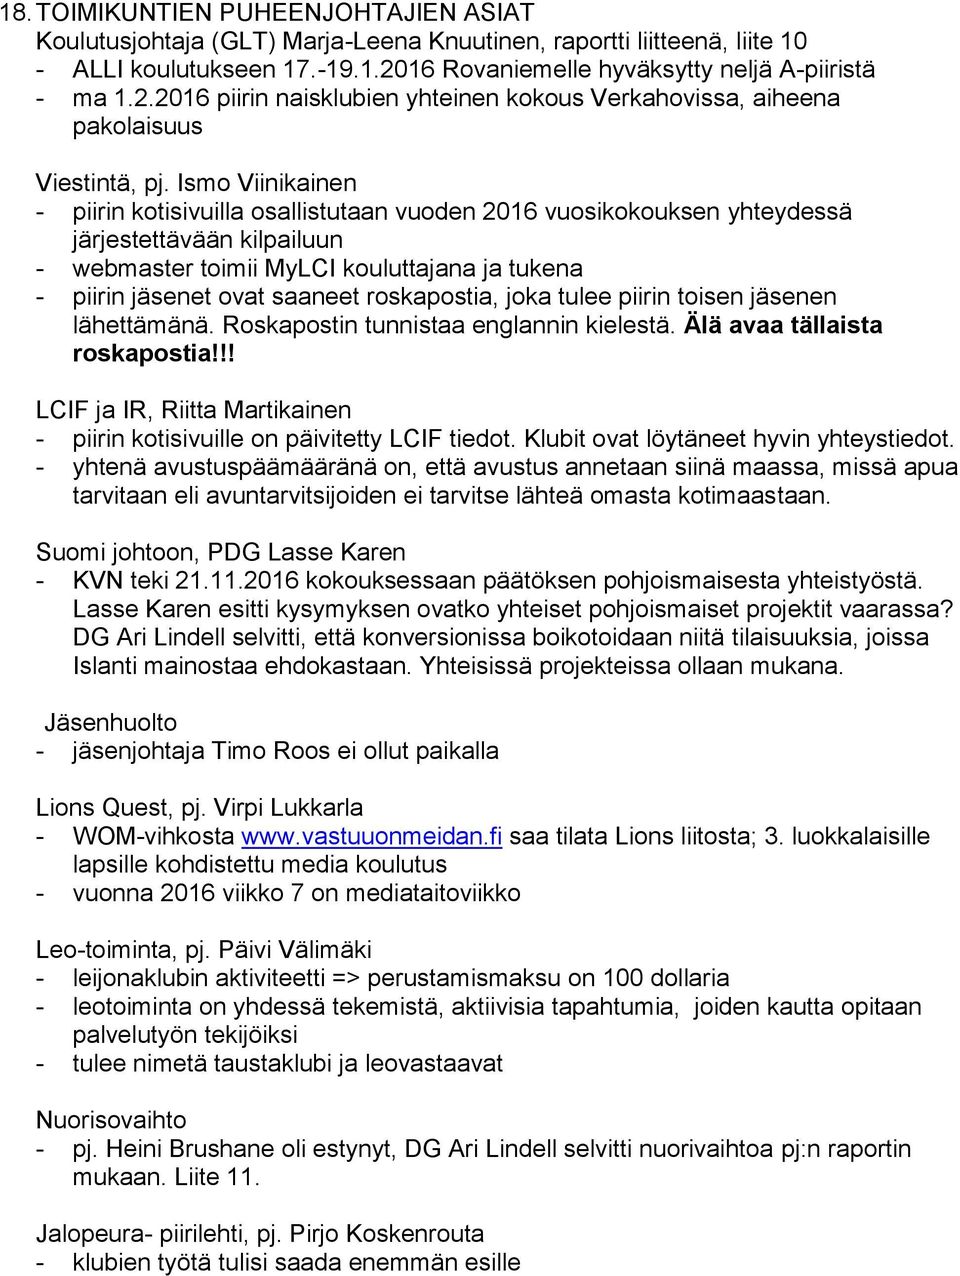 Ismo Viinikainen - piirin kotisivuilla osallistutaan vuoden 2016 vuosikokouksen yhteydessä järjestettävään kilpailuun - webmaster toimii MyLCI kouluttajana ja tukena - piirin jäsenet ovat saaneet